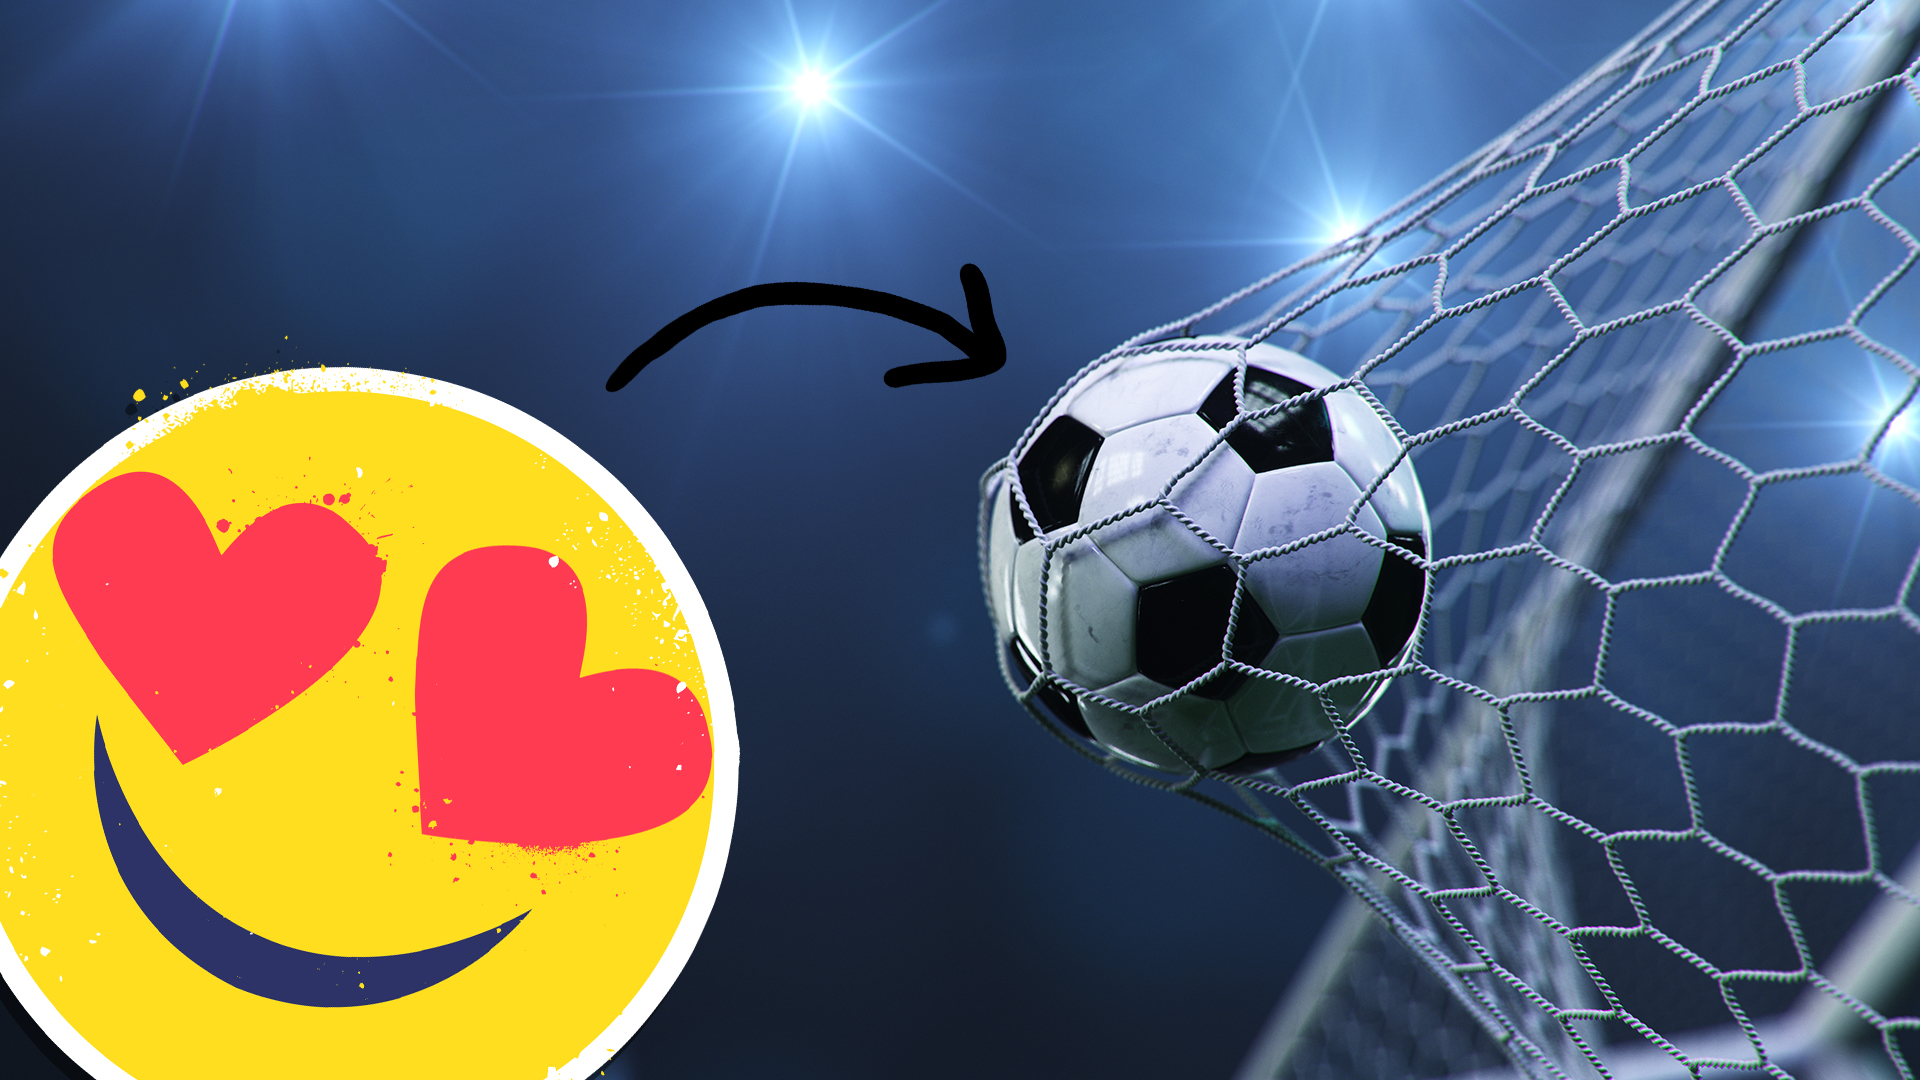 A goal and a heart eyes emoji